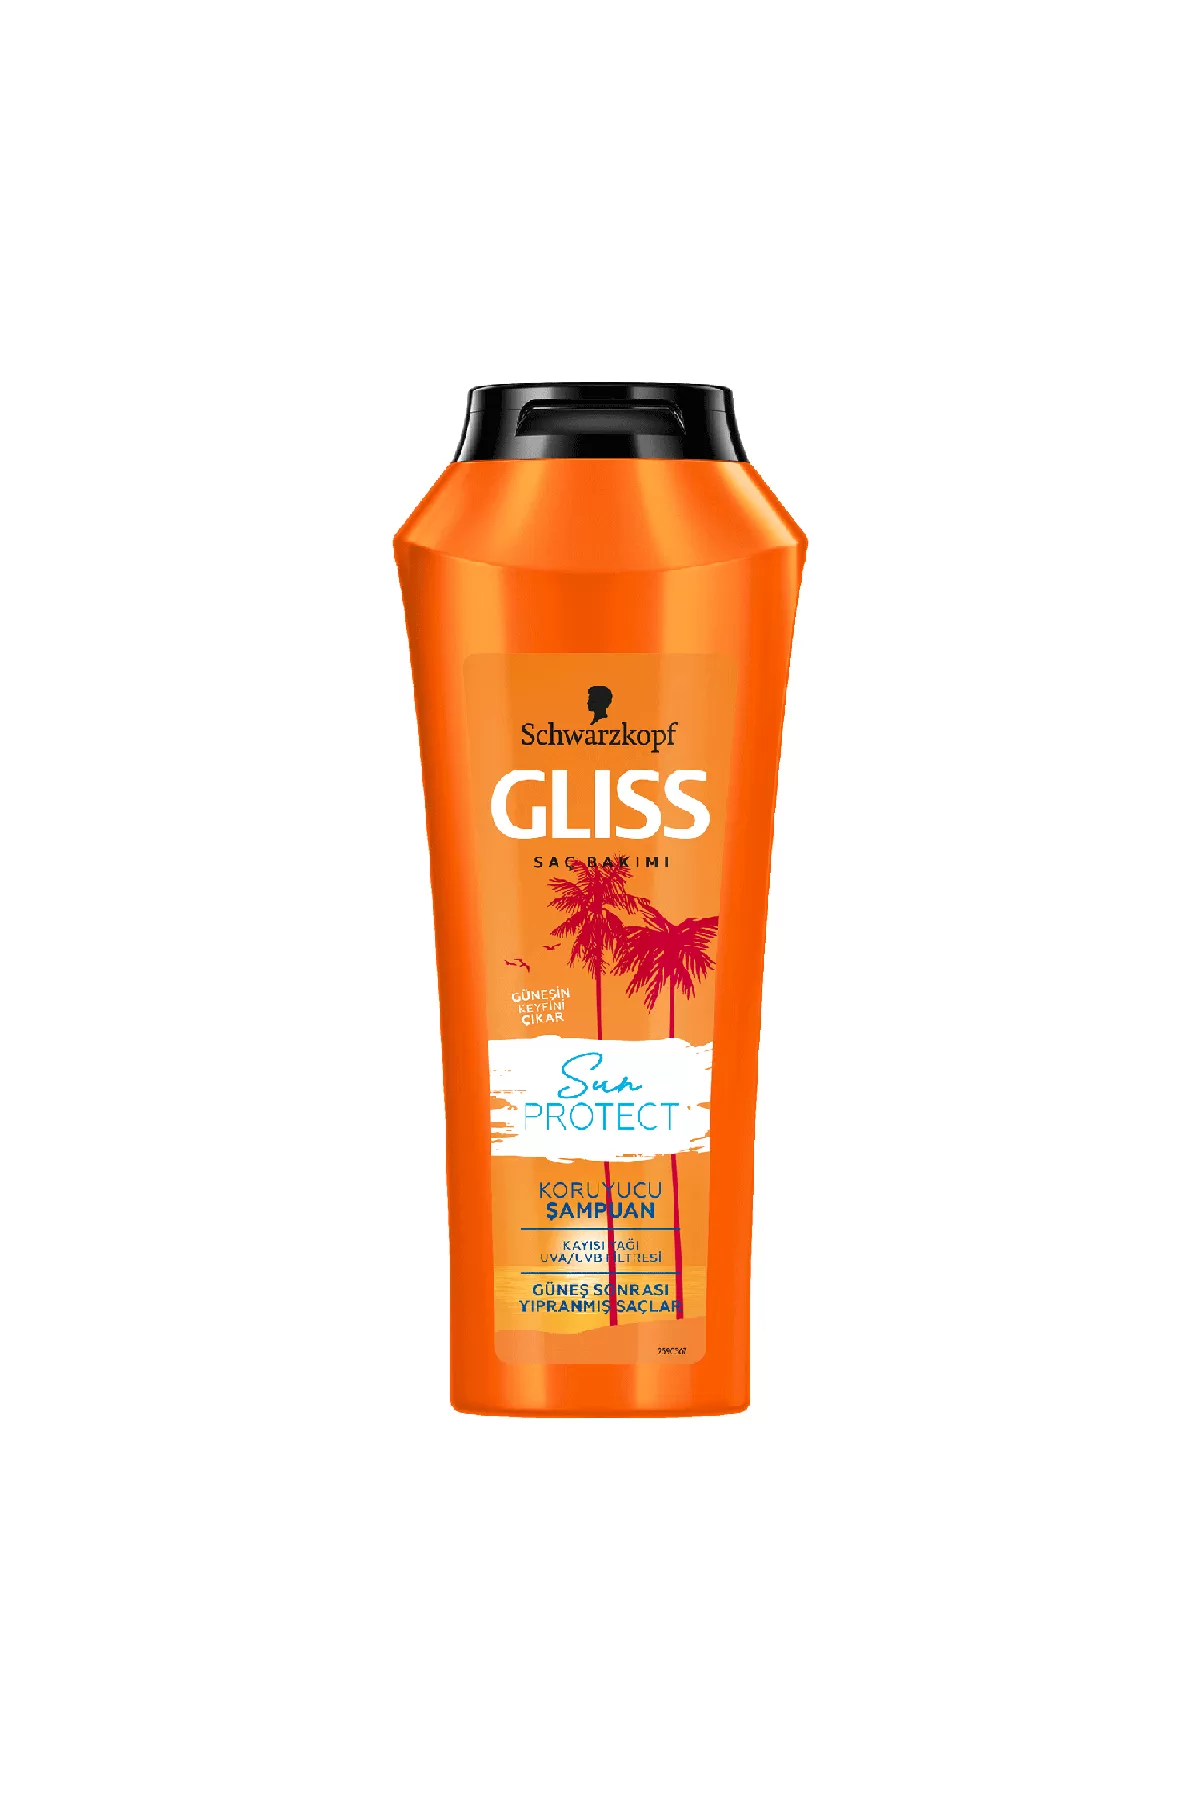 محافظت کننده از مو در برابر اشعه خورشید UVA/UVB  گلیس GLISS شامپو ضد اشعه خورشید